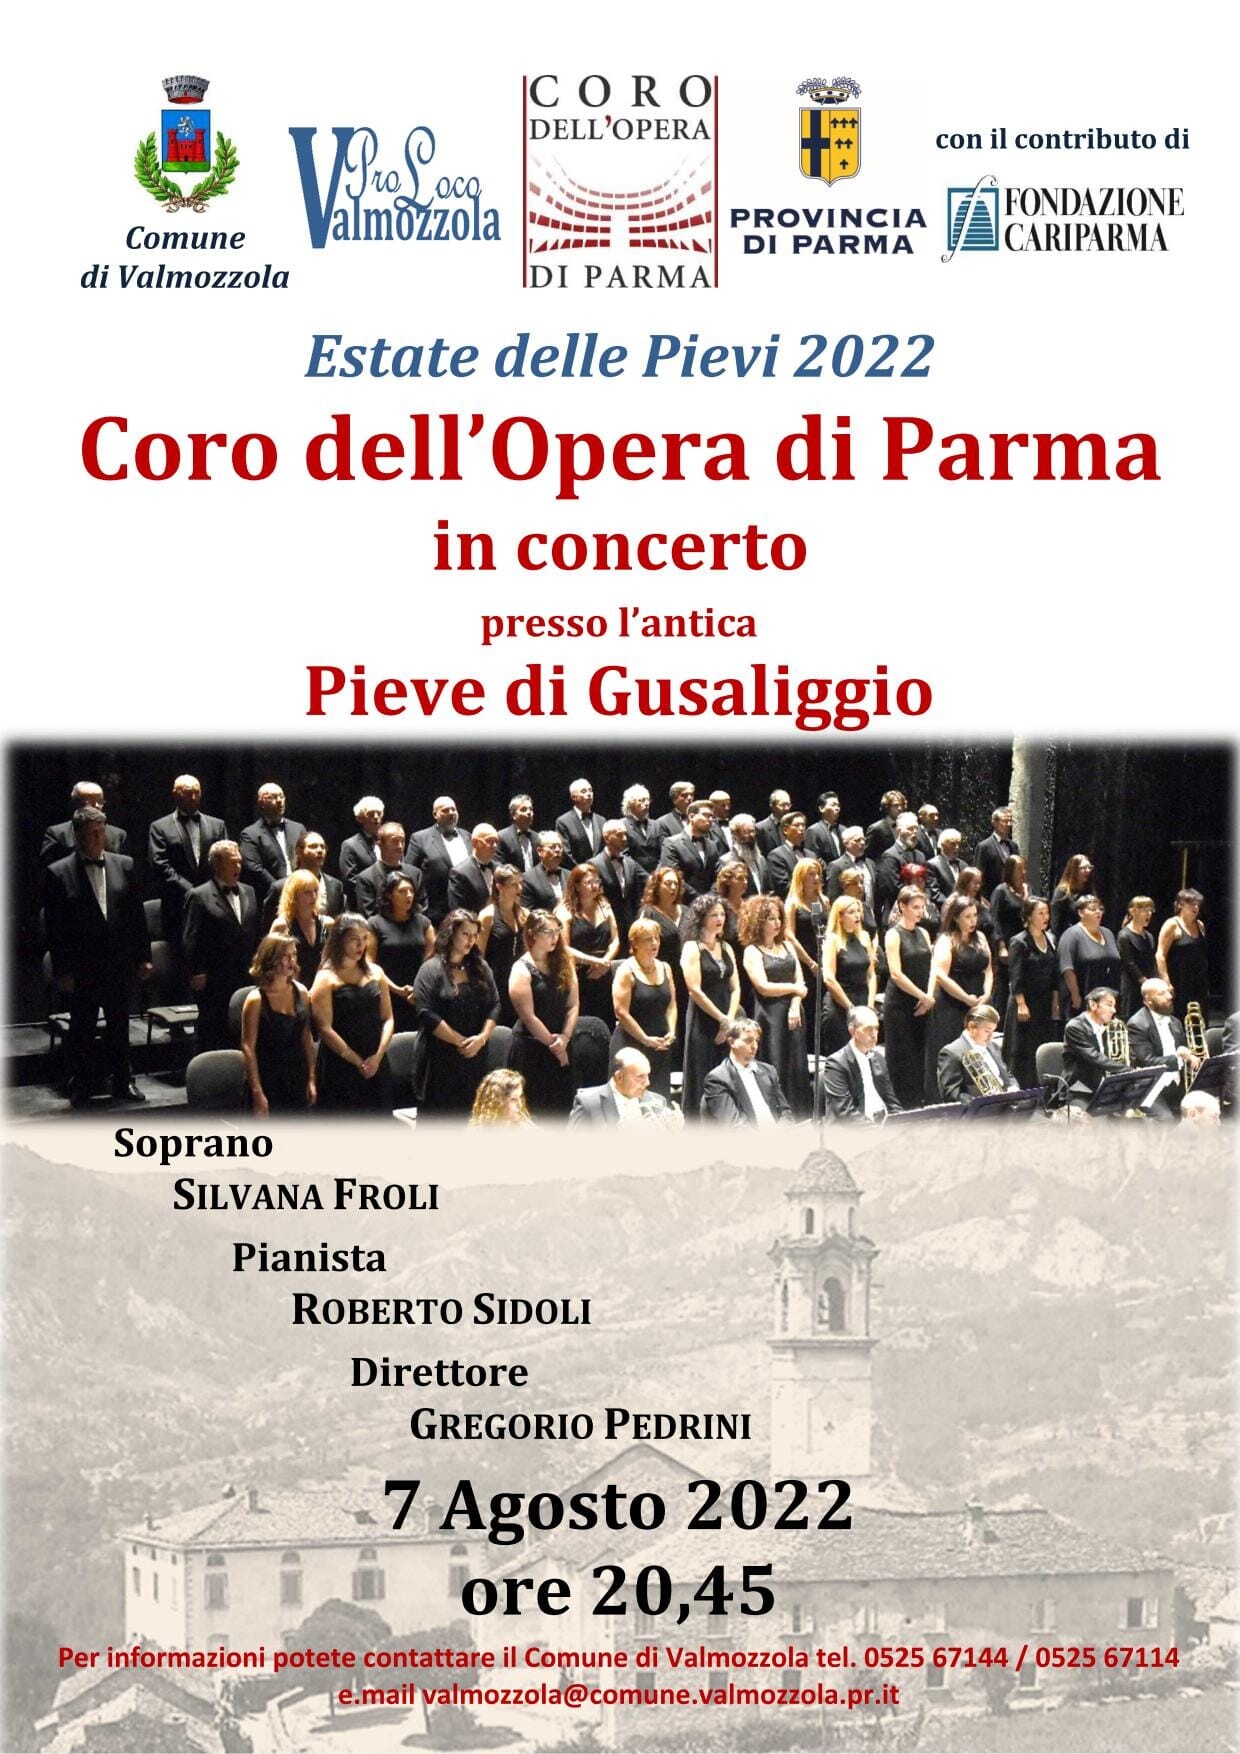 Estate delle Pievi 2022: coro dell'opera di Parma in concerto